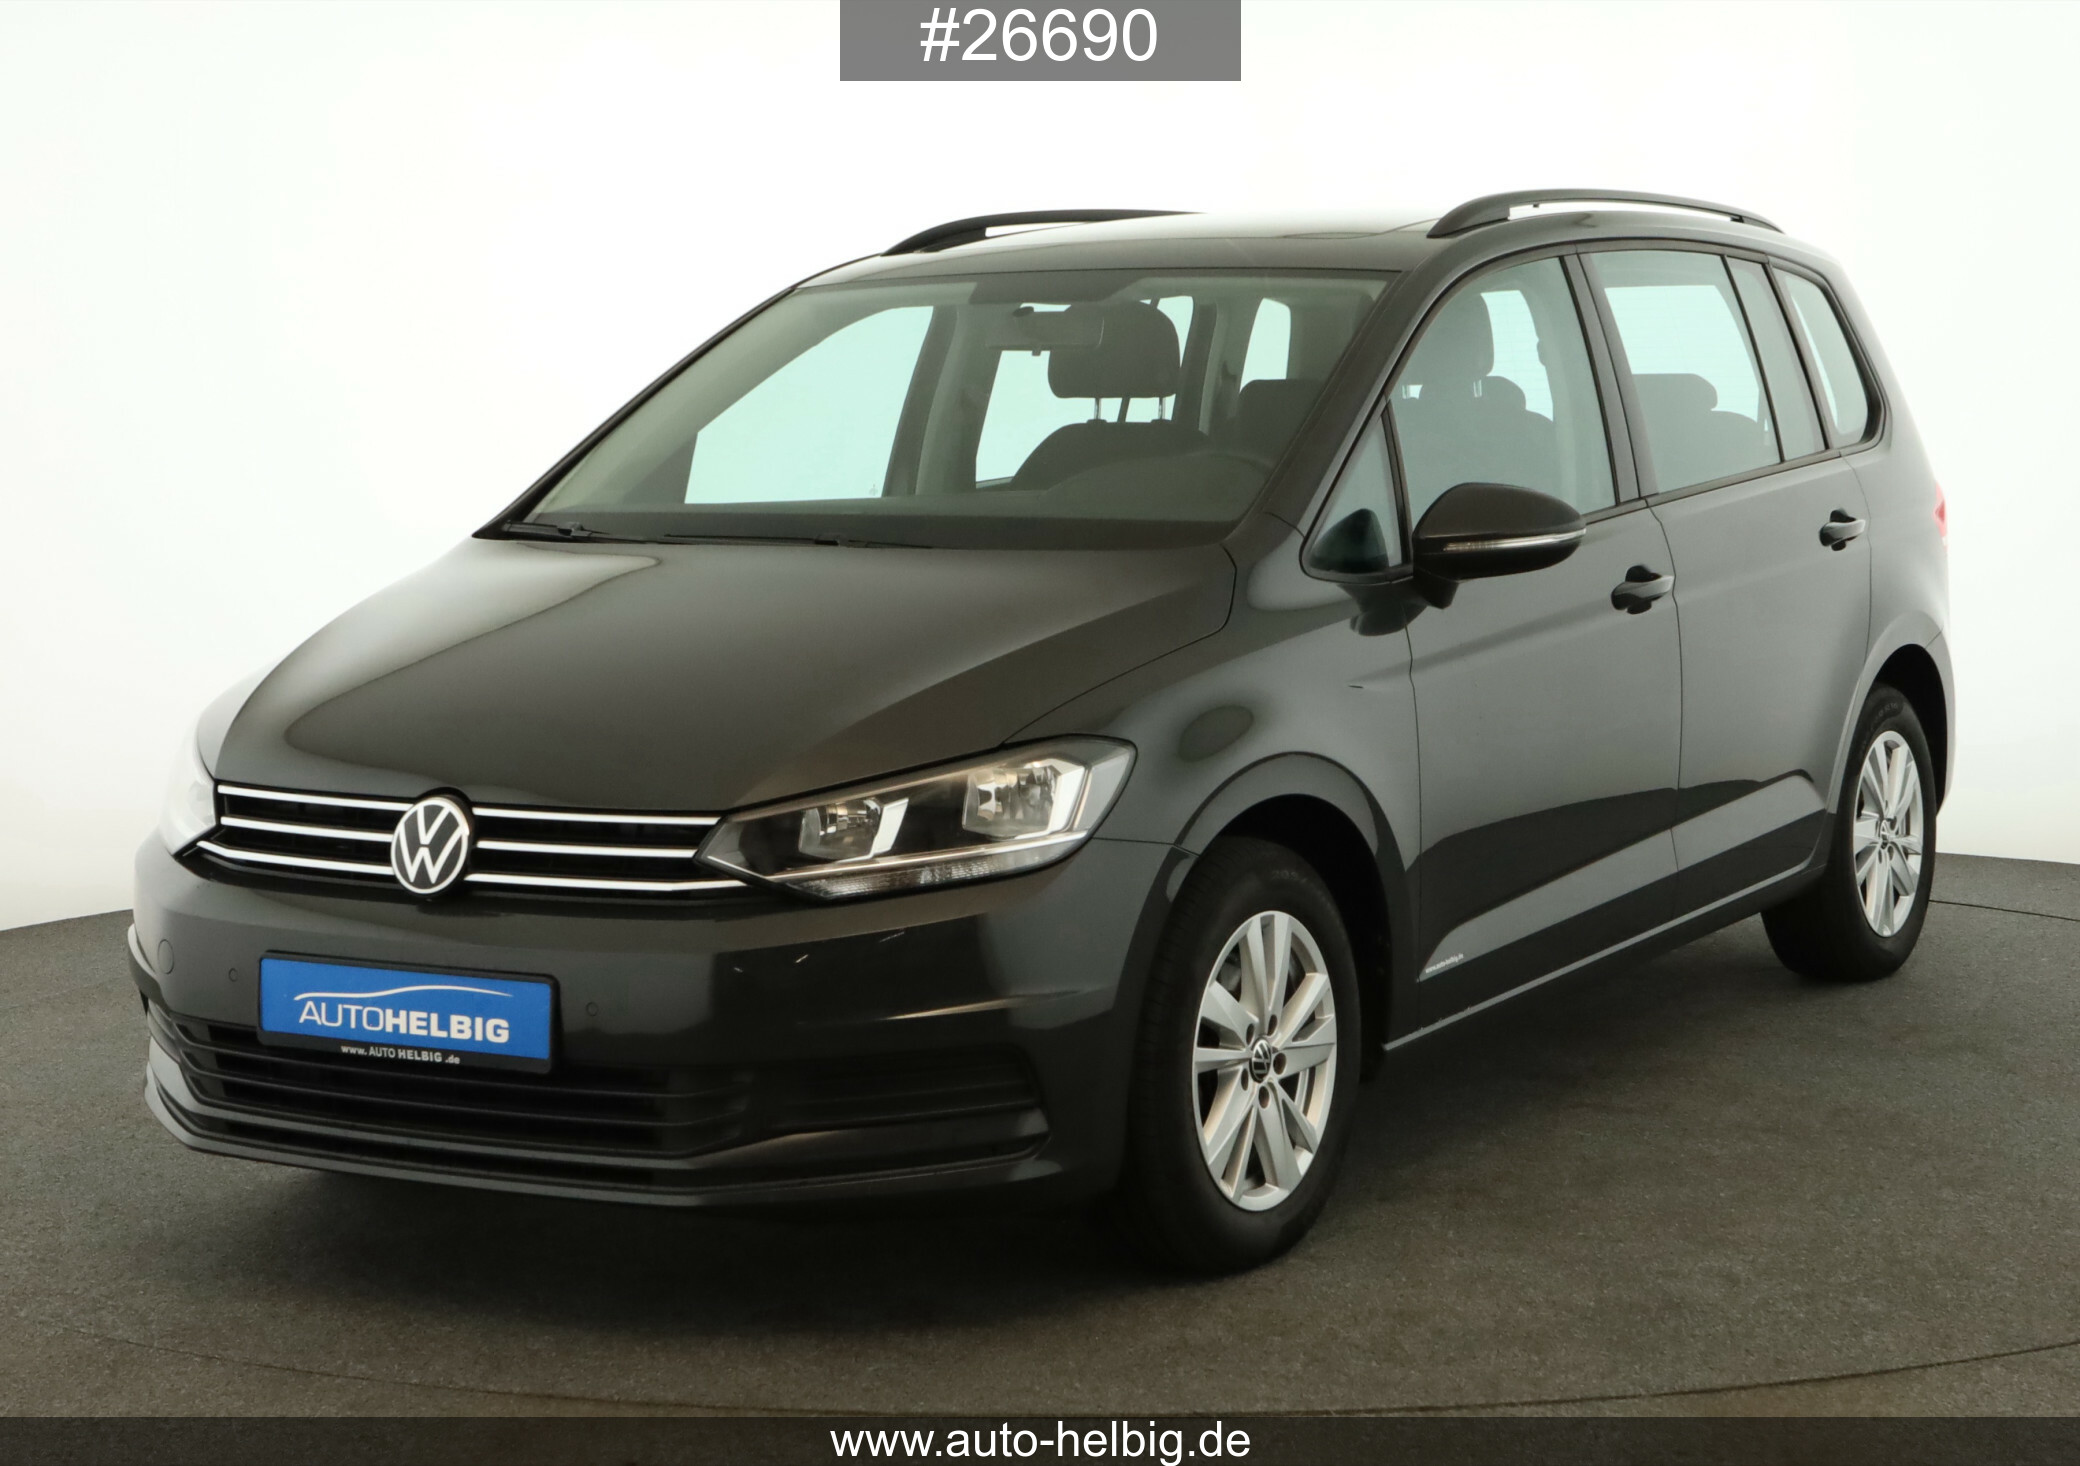 Volkswagen Touran 2.0 TDI Comfortline ### #